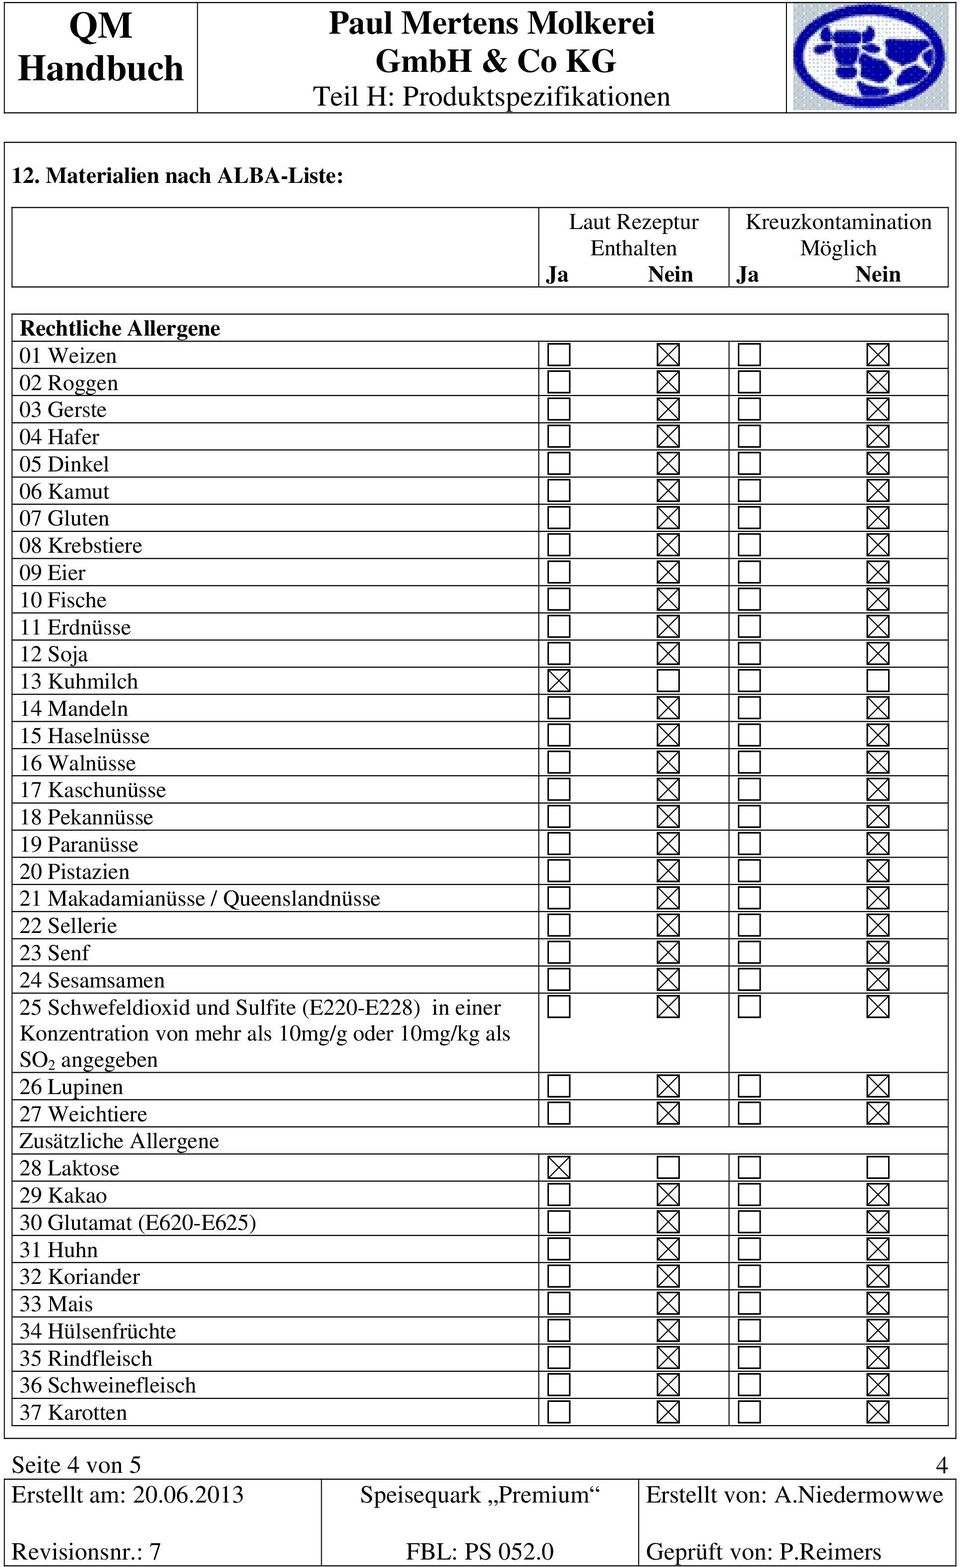 Queenslandnüsse 22 Sellerie 23 Senf 24 Sesamsamen 25 Schwefeldioxid und Sulfite (E220-E228) in einer Konzentration von mehr als 10mg/g oder 10mg/kg als SO 2 angegeben 26 Lupinen 27